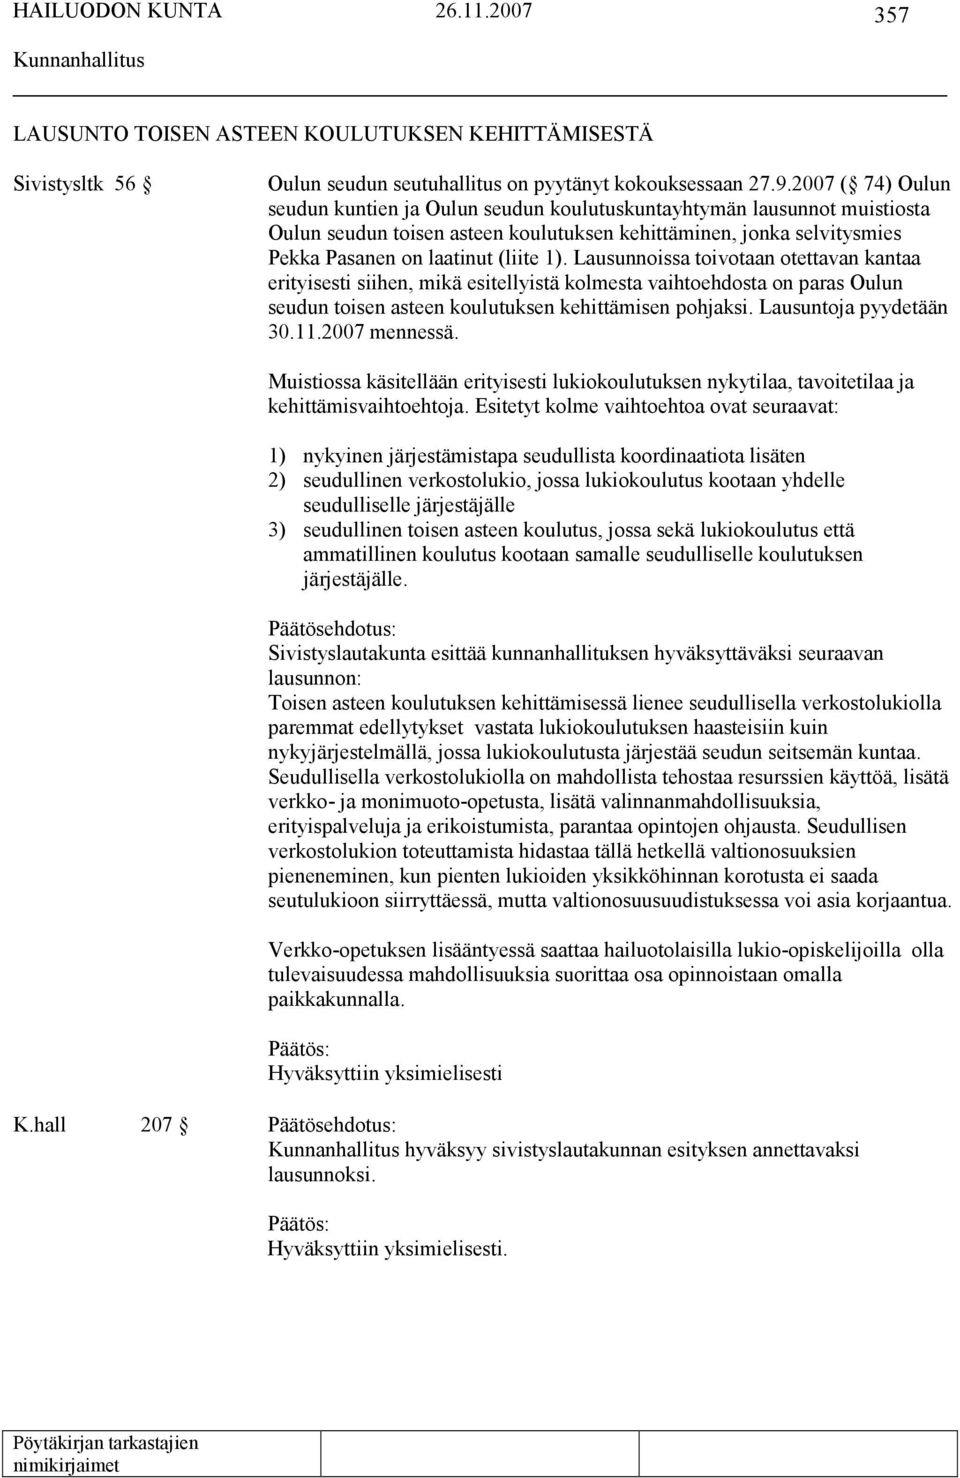 Lausunnoissa toivotaan otettavan kantaa erityisesti siihen, mikä esitellyistä kolmesta vaihtoehdosta on paras Oulun seudun toisen asteen koulutuksen kehittämisen pohjaksi. Lausuntoja pyydetään 30.11.